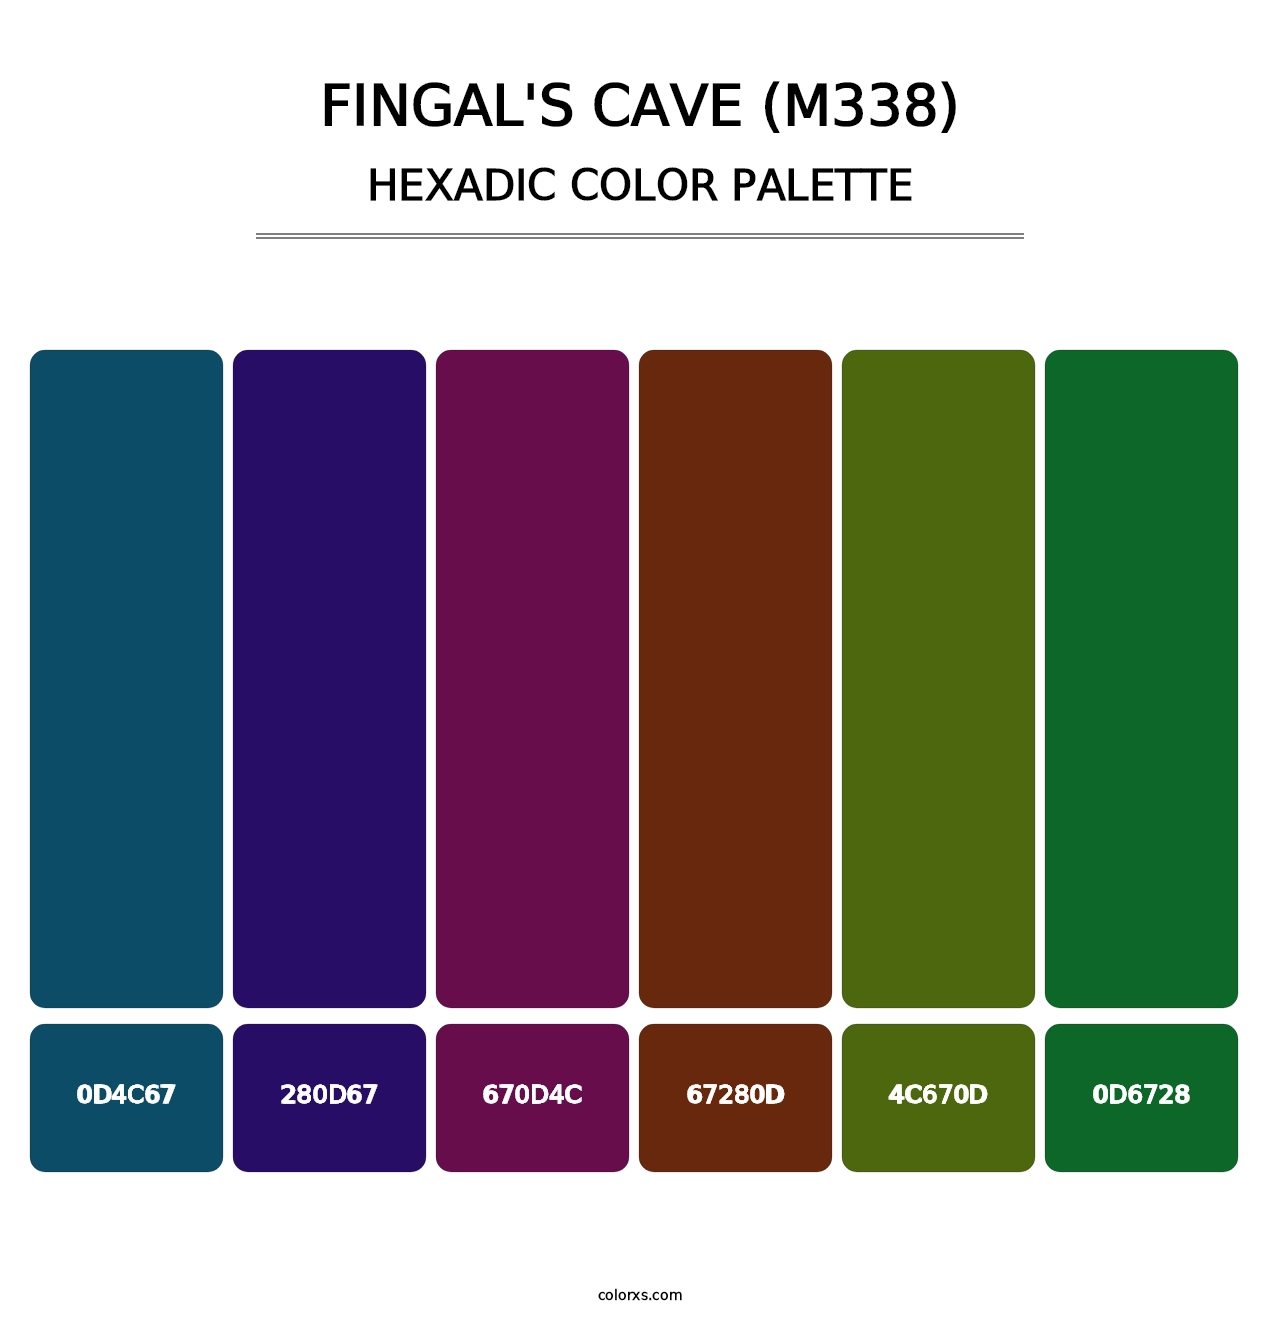 Fingal's Cave (M338) - Hexadic Color Palette